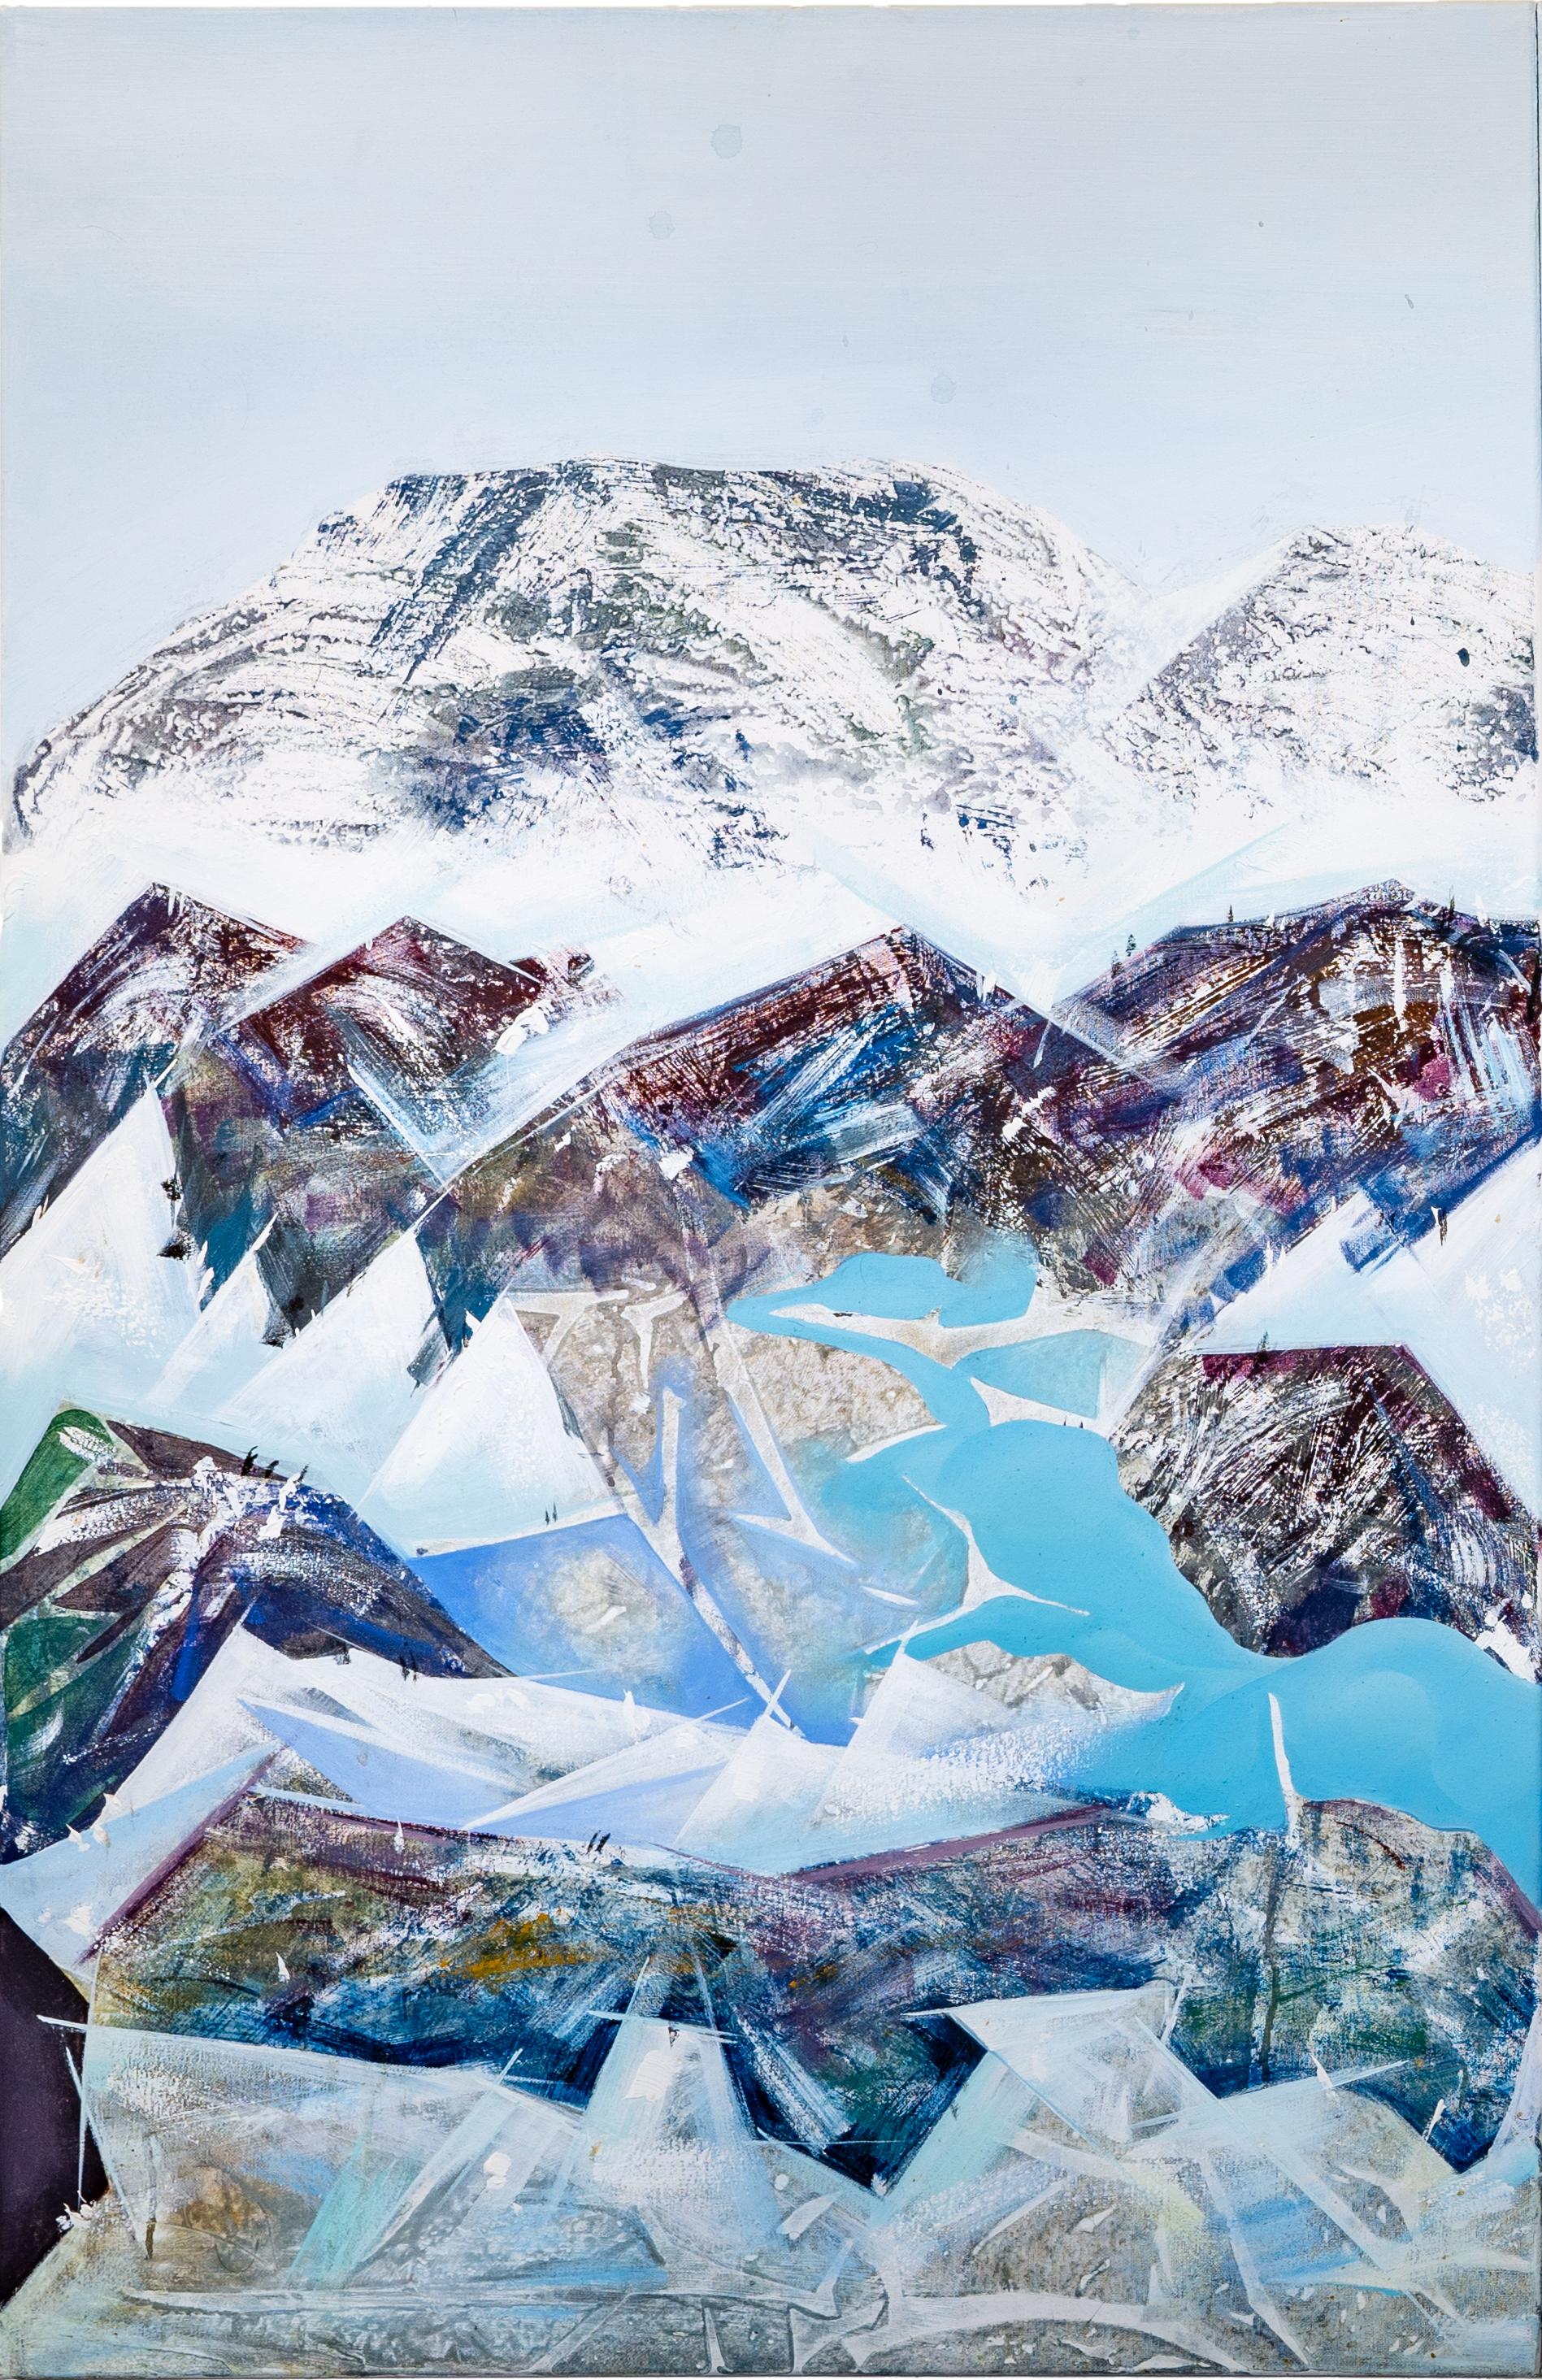 Lac de Thoune (Lake Thun) - Contemporary Painting by Shuo Liu